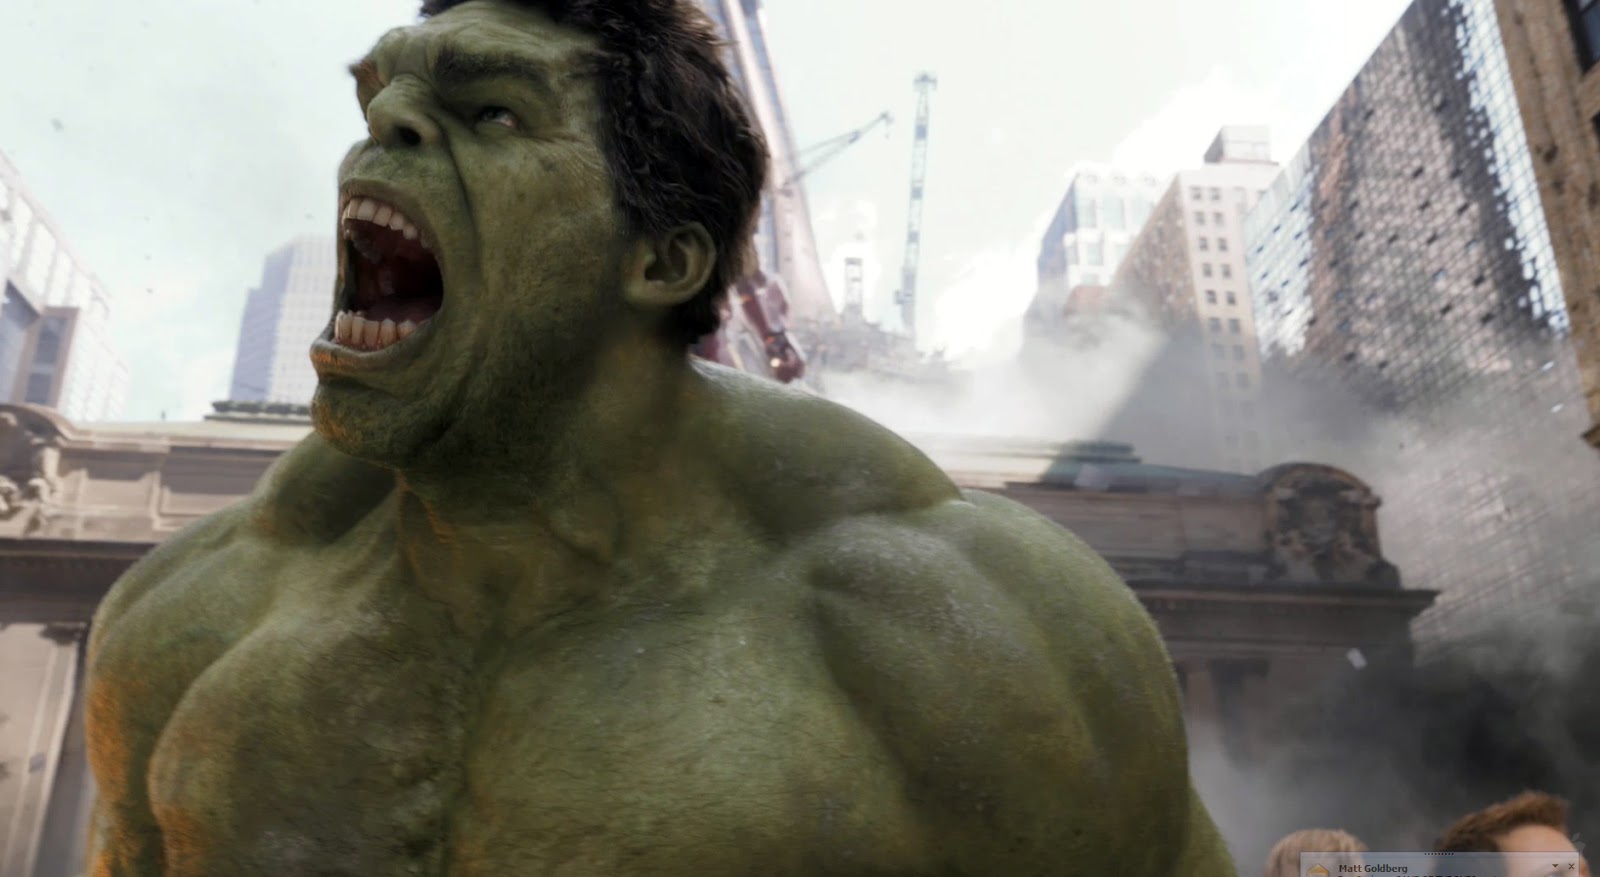 http://4.bp.blogspot.com/-Kst5Vwmz184/T7OrCkVF4QI/AAAAAAAAAvU/6MU4ib_8rjk/s1600/Hulk-The-Avengers-movie-image-2.jpg